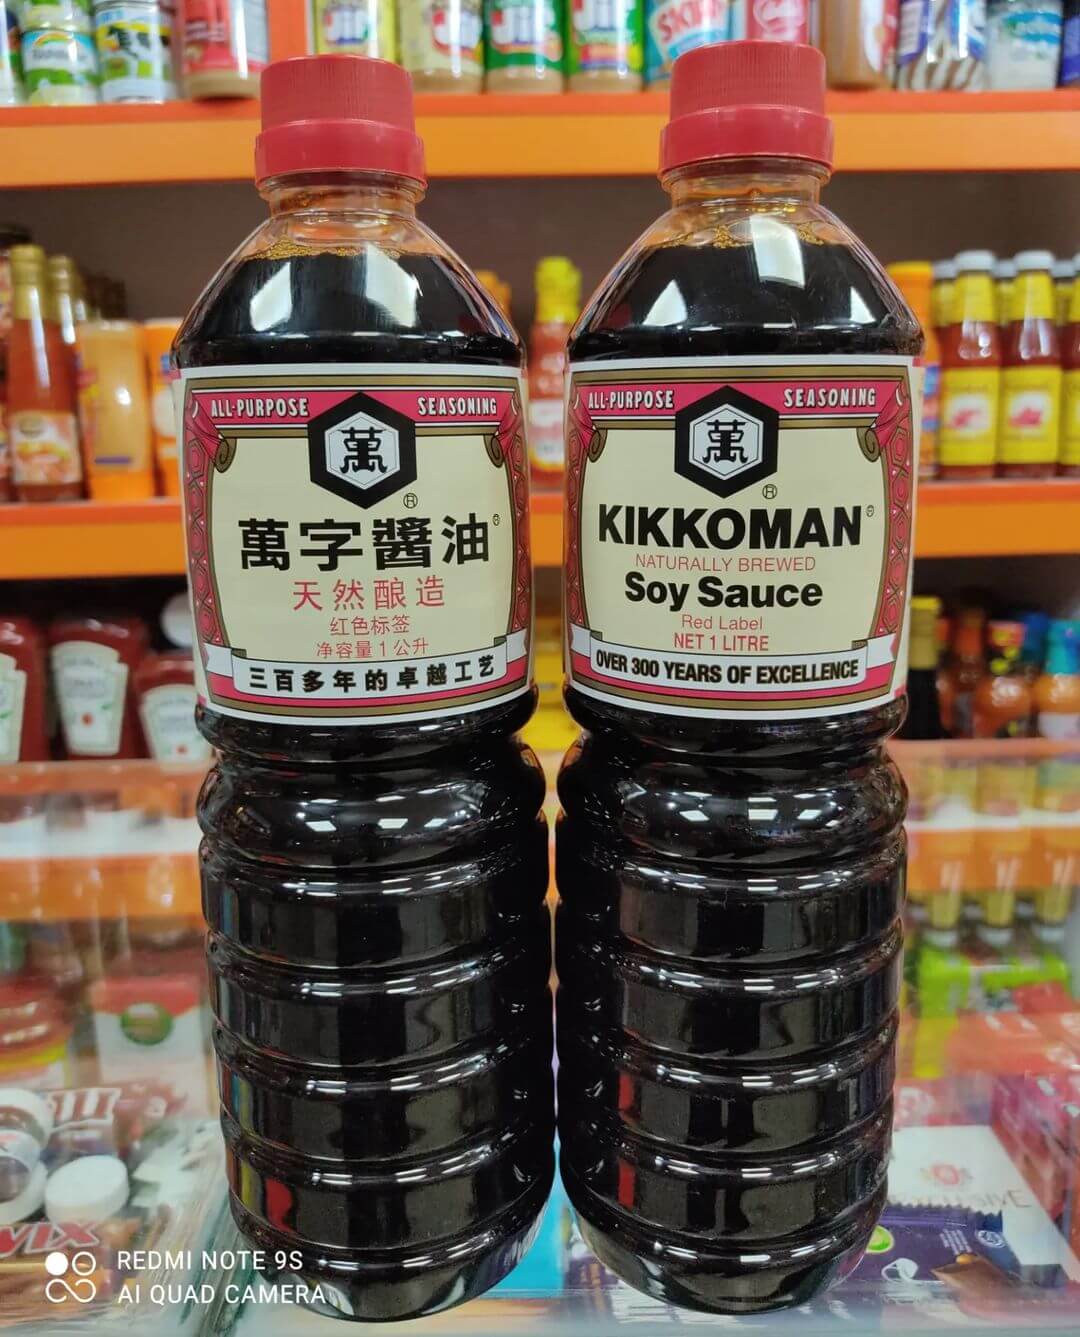 (سویا سس کیکومن ژاپن 1 لیتری Japanese soy sauce kikkoman 1liter)